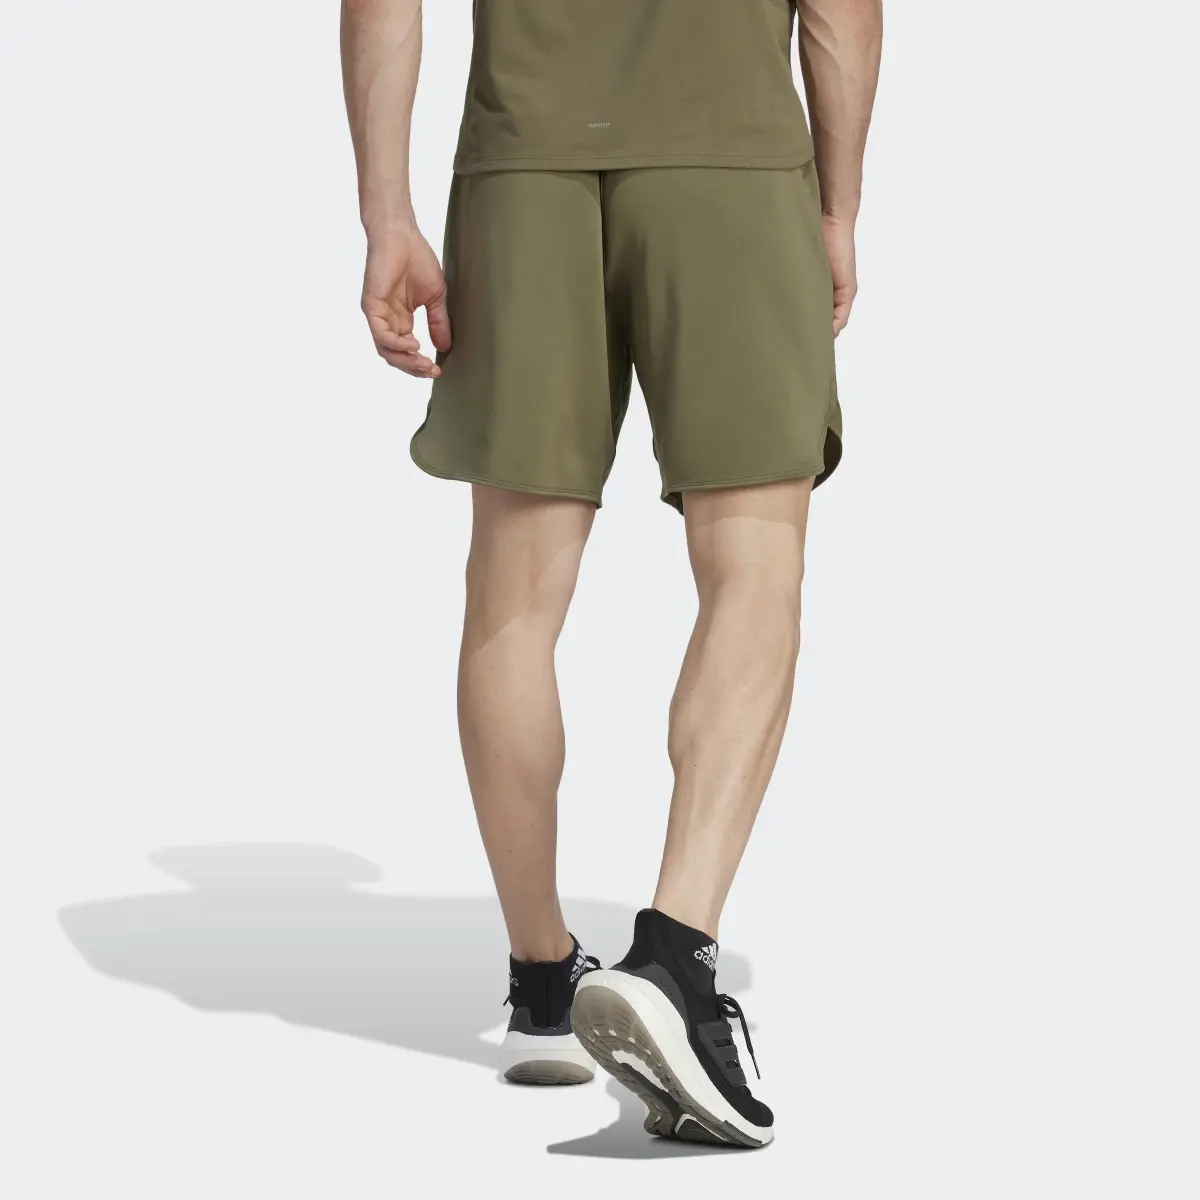 Adidas Shorts Designed for Training. 2